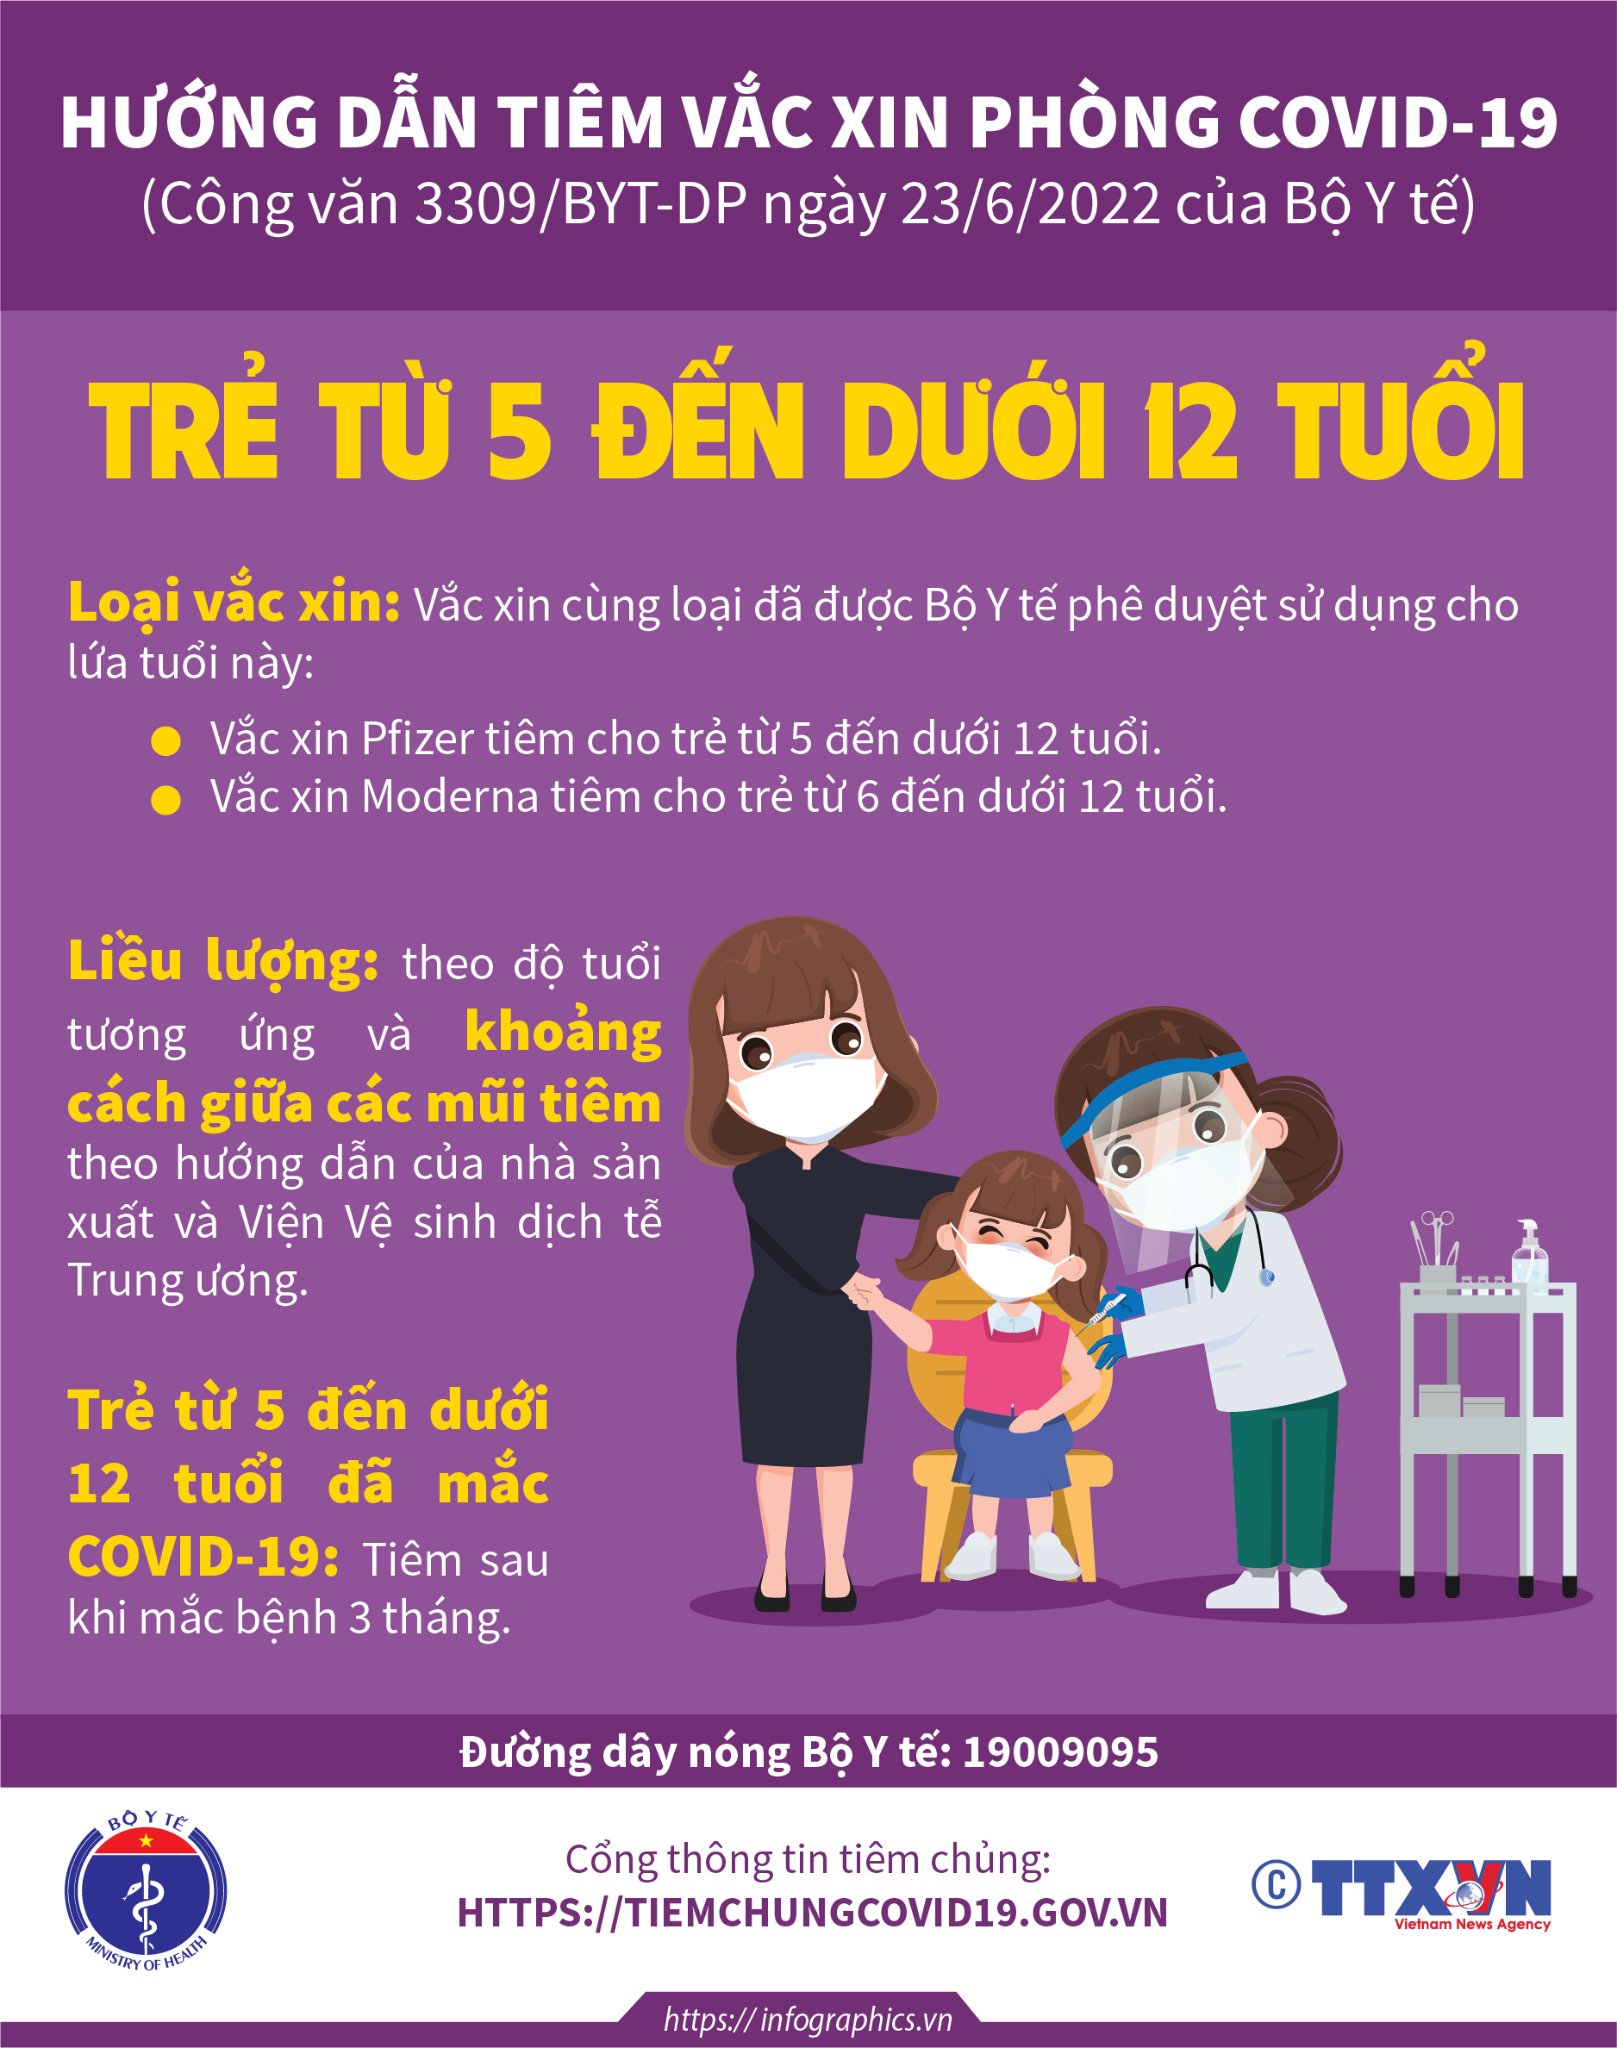 [Infographic] - Hướng dẫn tiêm vaccine phòng COVID-19 cho trẻ từ 5 - dưới 12 tuổi-1